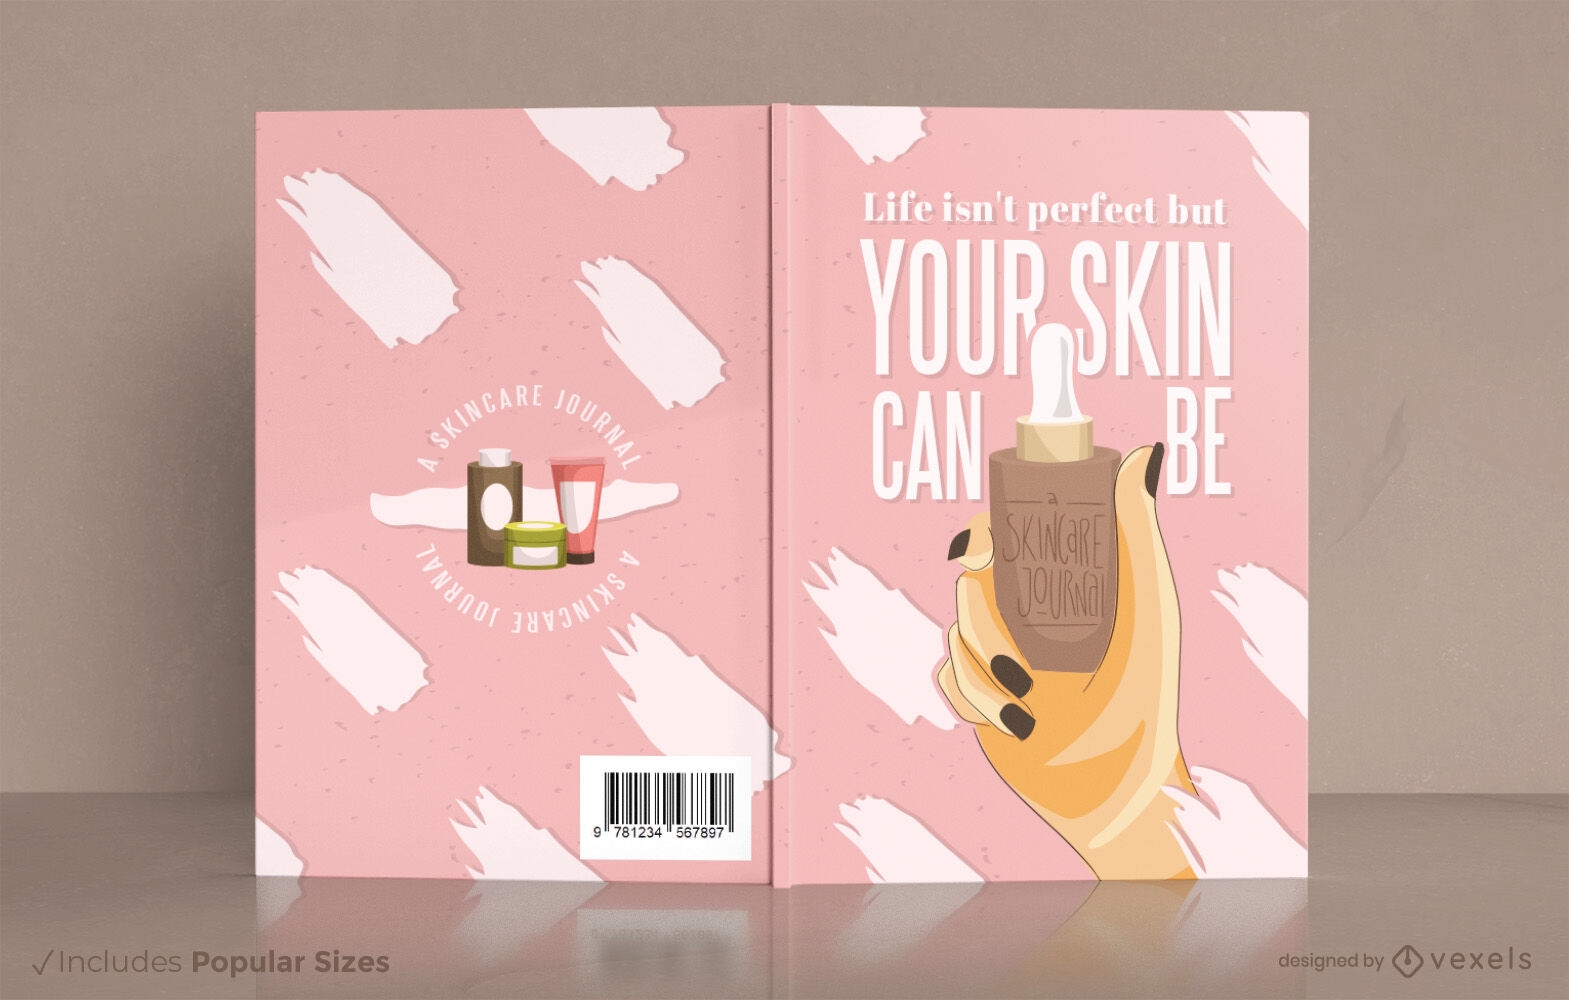 Dise?o de portada de libro de productos de belleza para el cuidado de la piel.